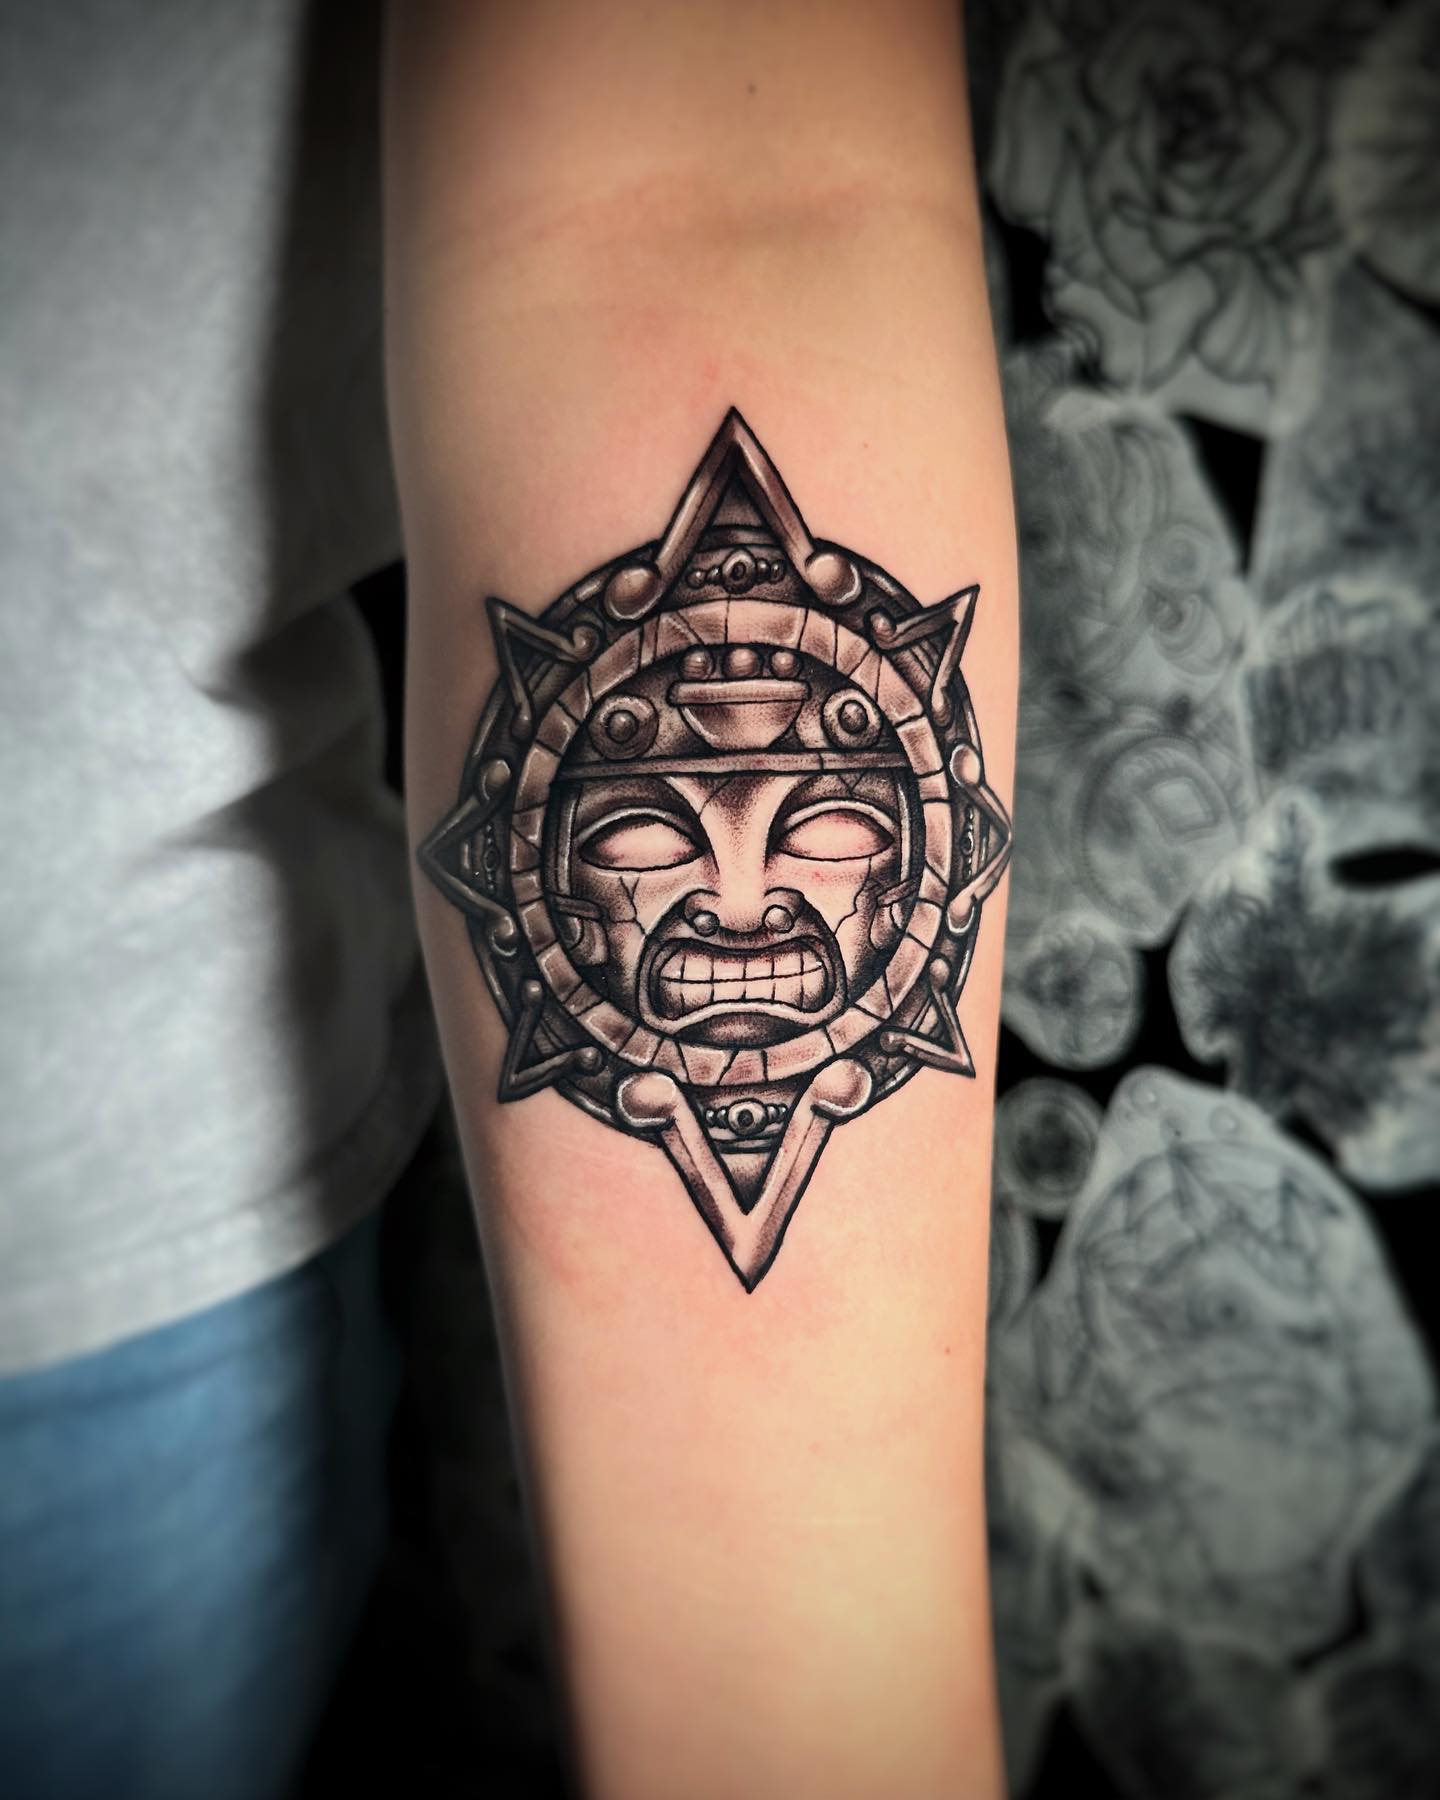 Aztec Sun Tattoo on Arm